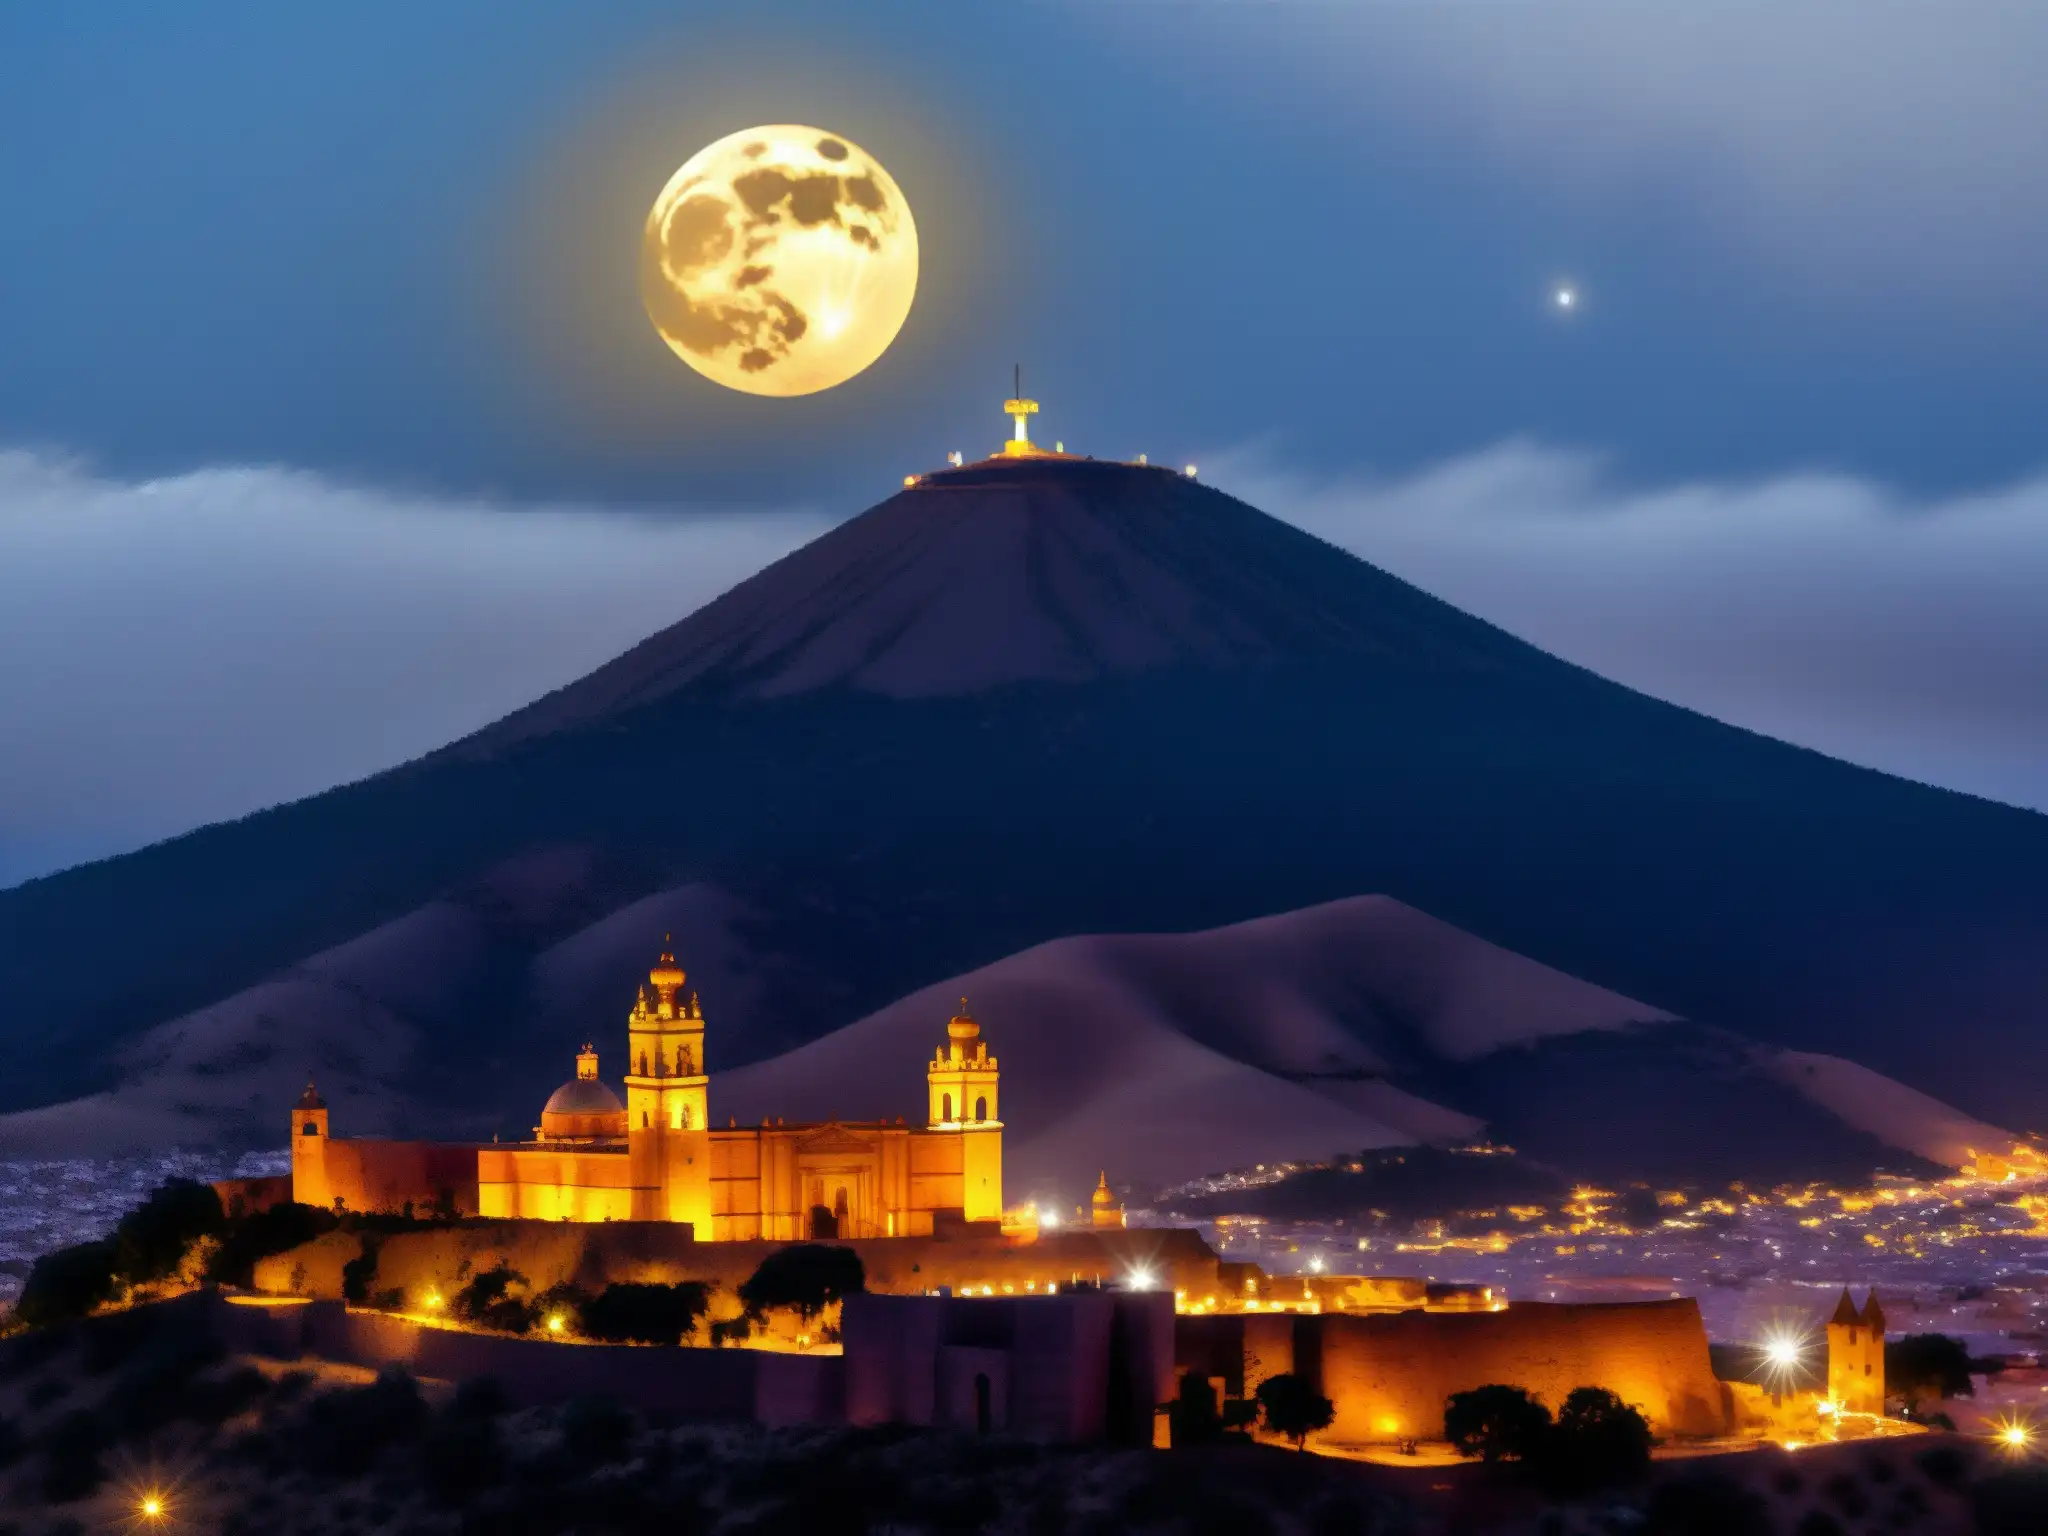 En la misteriosa noche iluminada por la luna, el Cerro de la Bufa en Zacatecas se alza imponente entre la niebla, evocando fantasmas y leyendas